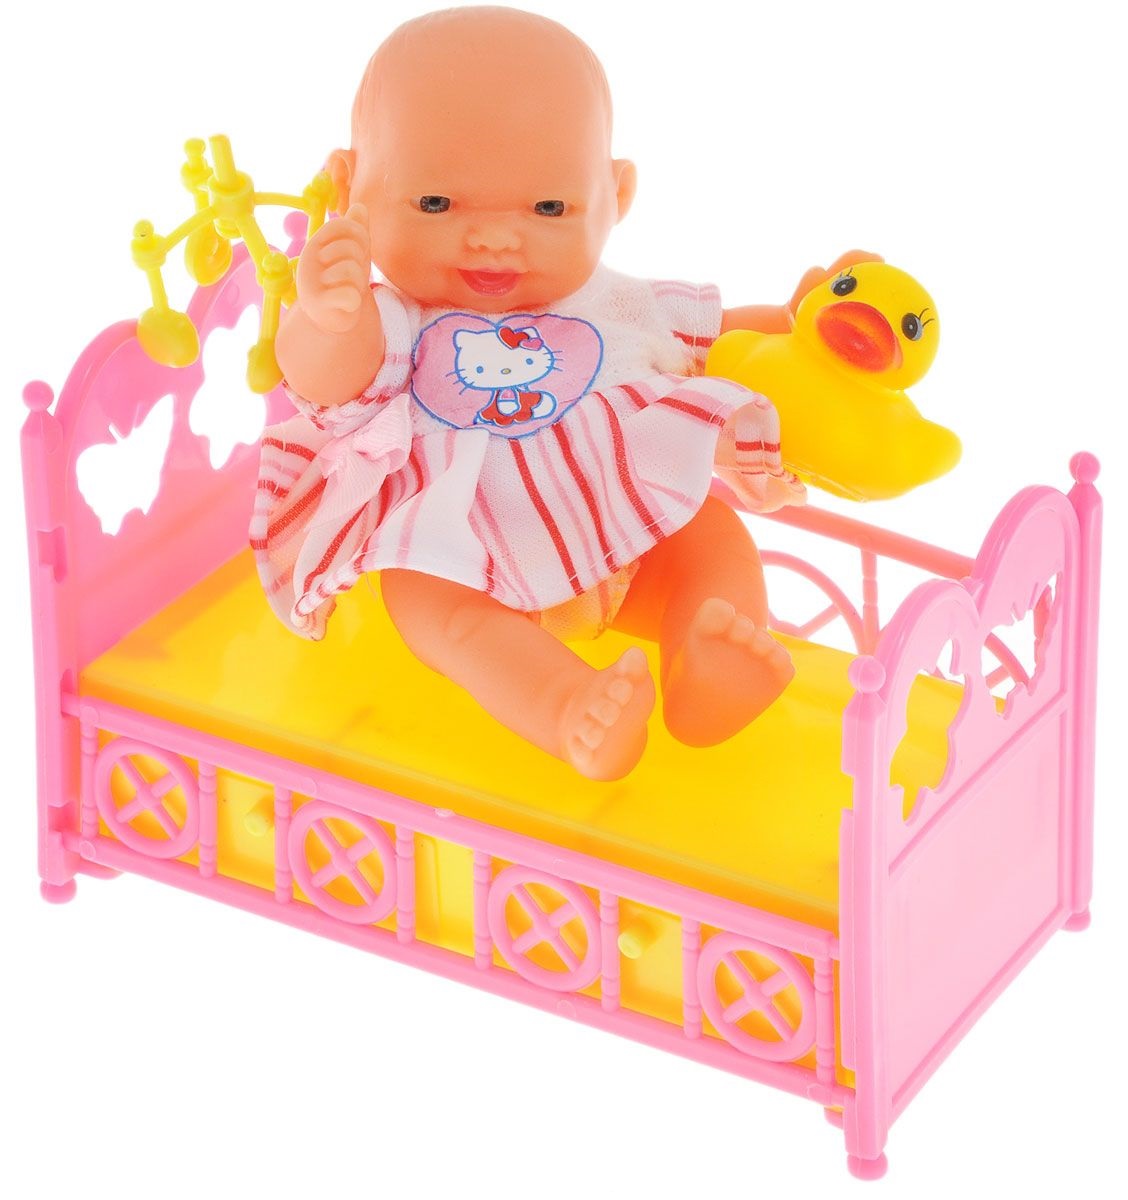 Пупс в кроватке с аксессуарами Hello Kitty, 10 см, бело-желтая одежда  